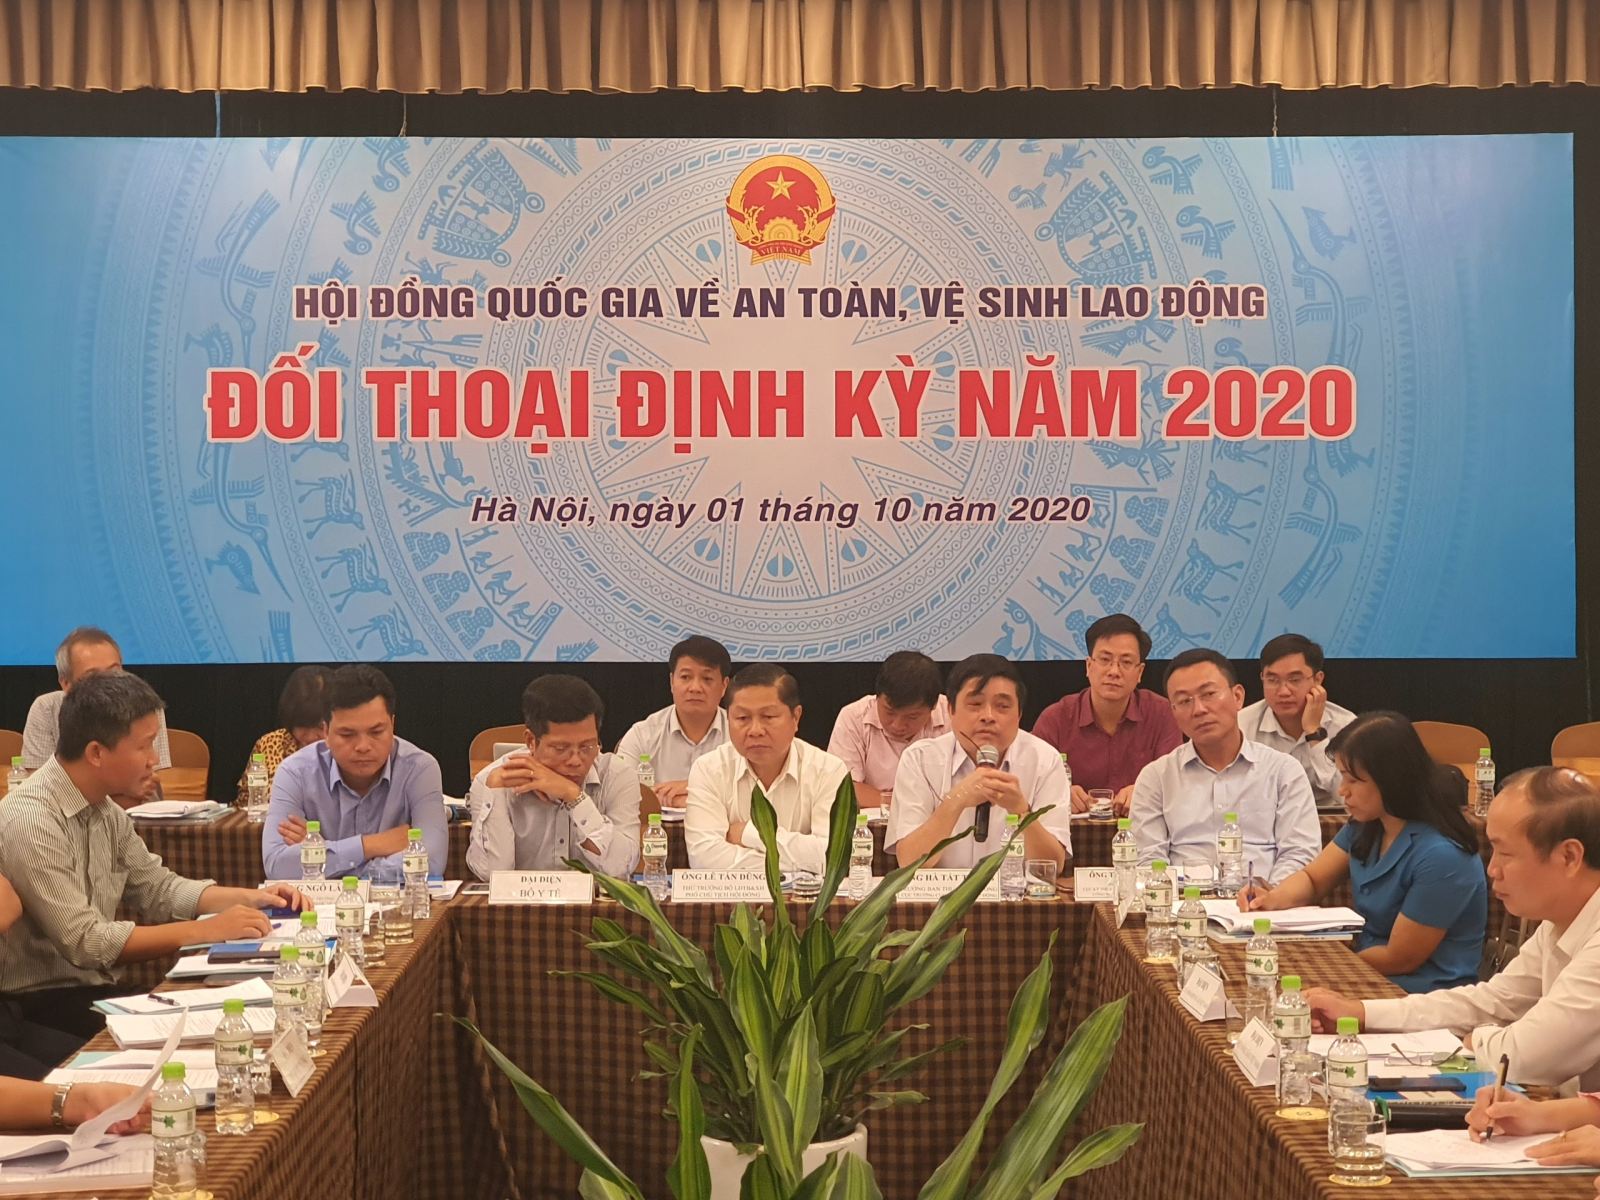 Hội đồng Quốc gia tổ chức đối thoại định kỳ năm 2020 về an toàn, vệ sinh lao động